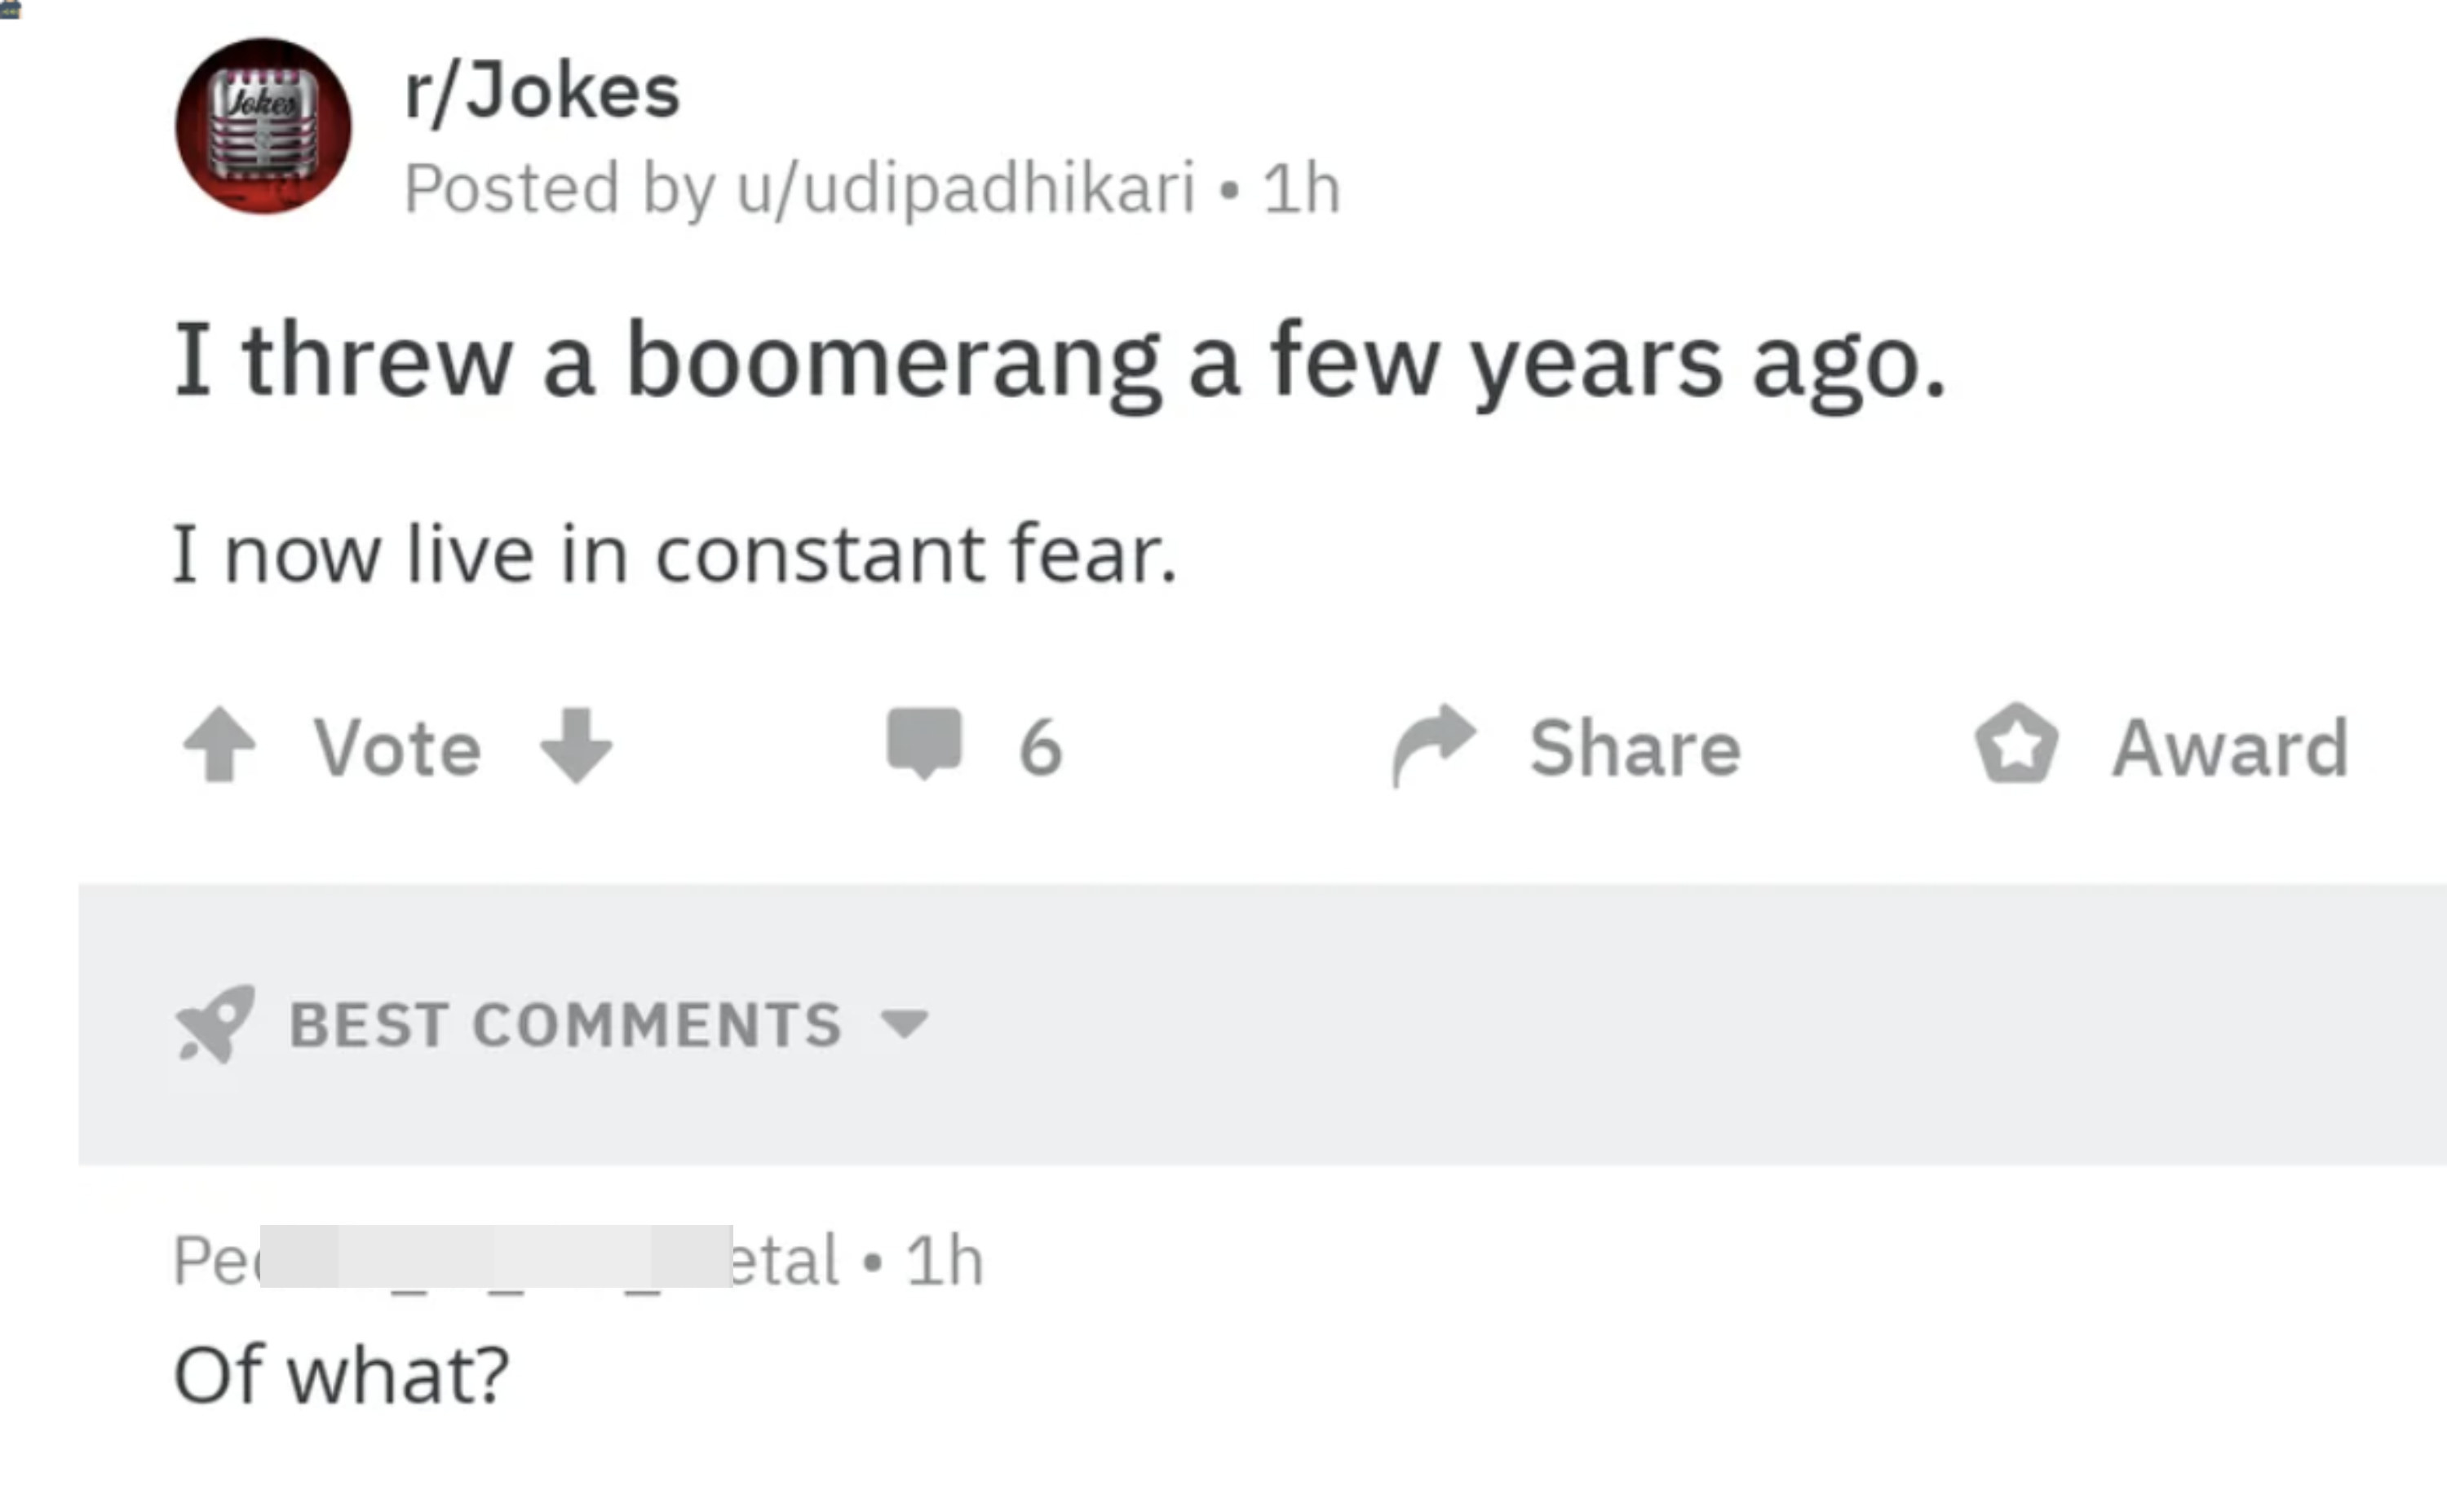 "I threw a boomerang a few years ago."